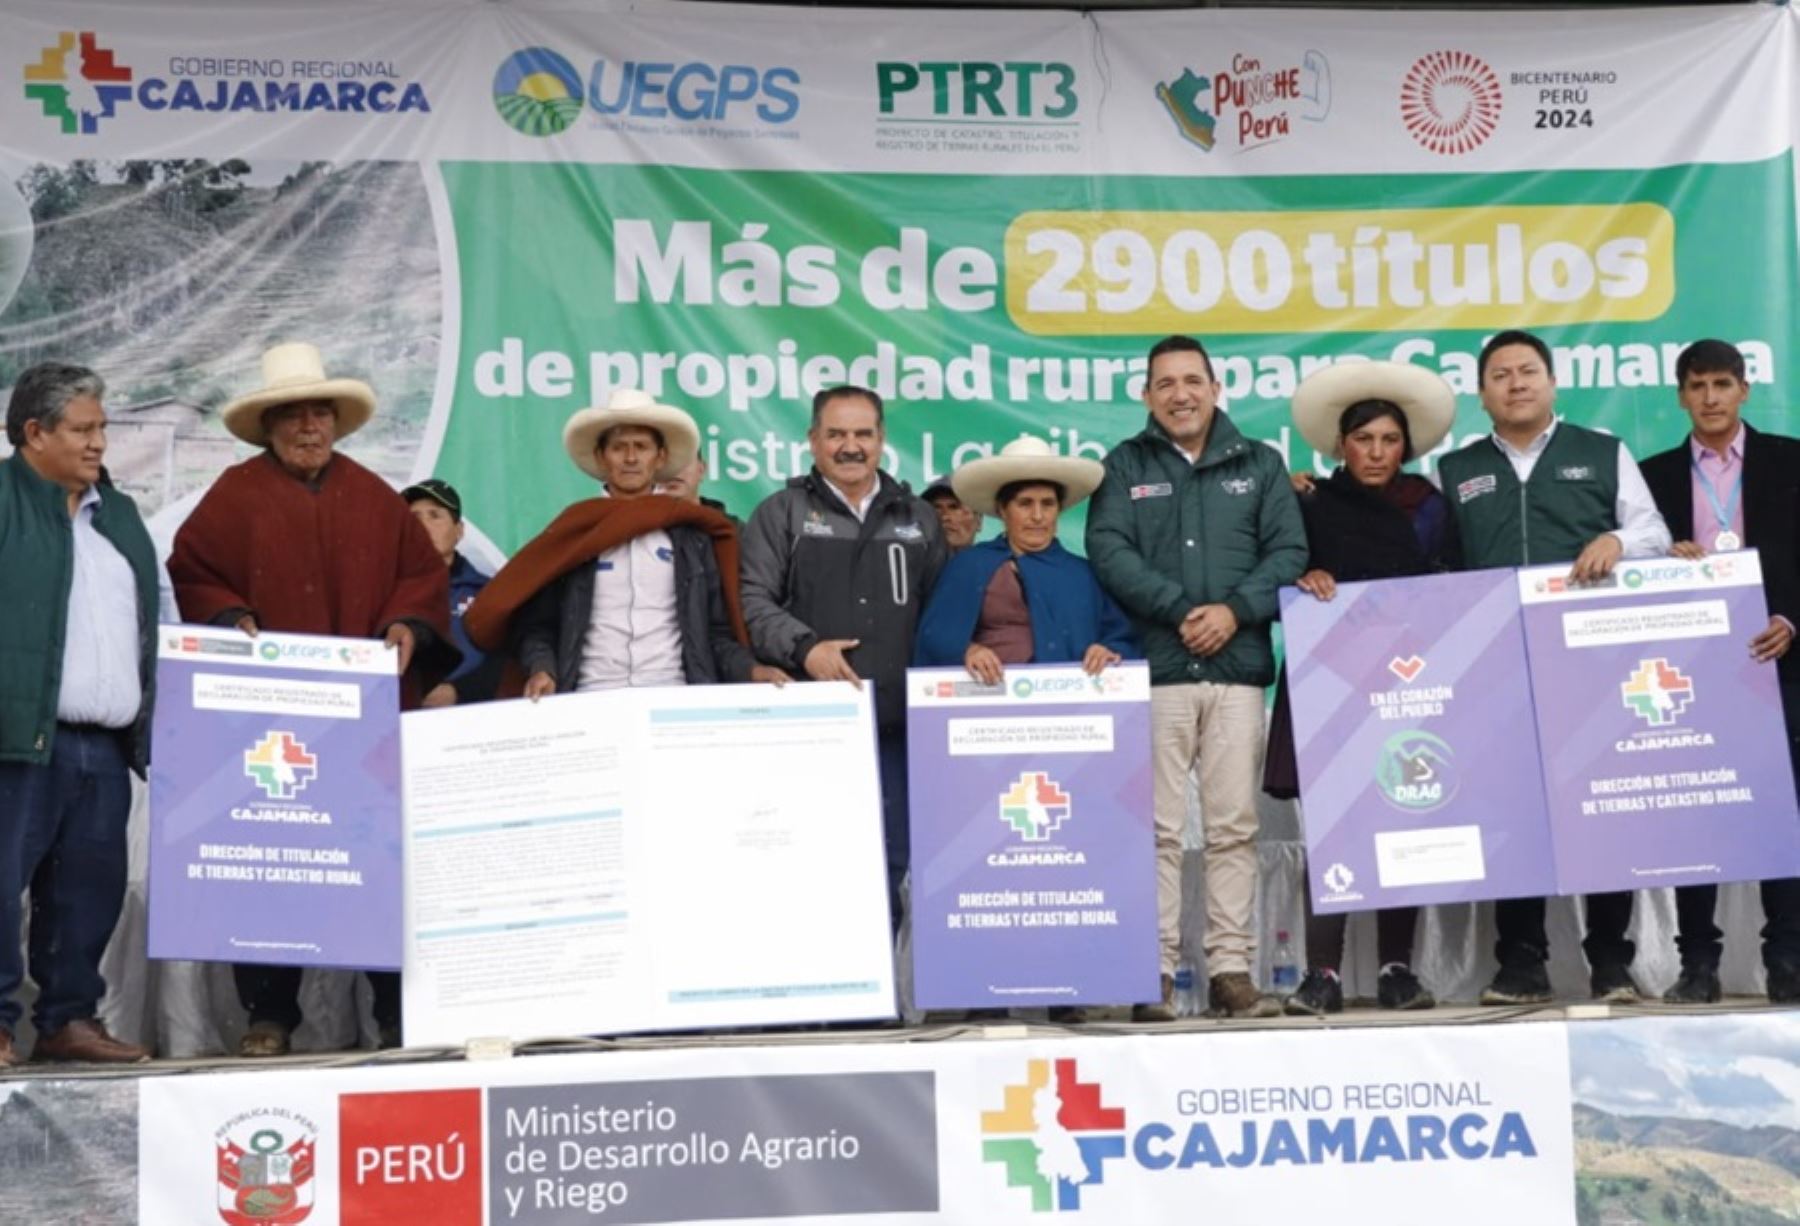 En un esfuerzo conjunto, el Ministerio de Desarrollo Agrario y Riego, a través del Proyecto Catastro, Titulación y Registro de Tierras Rurales en el Perú – Tercera Etapa (PTRT3)-UEGPS; el gobierno regional de Cajamarca y la Superintendencia Nacional de Registros Públicos (Sunarp), inscribieron 2,973 predios rurales individuales en el distrito de La Libertad de Pallán.